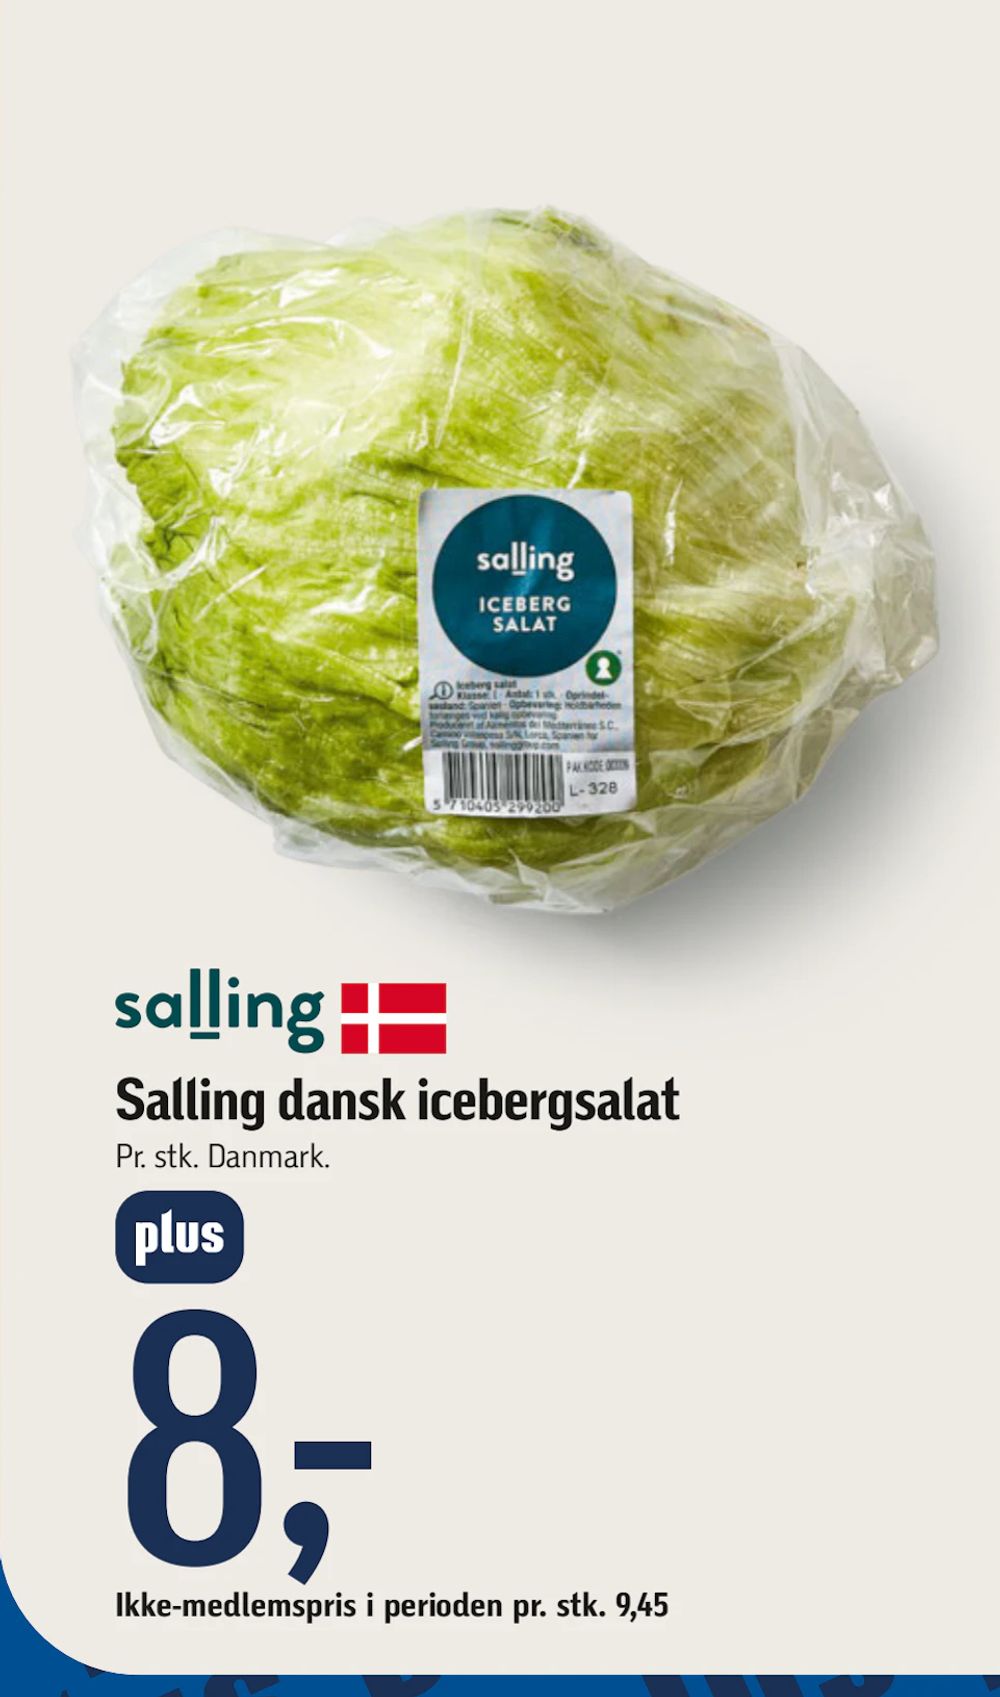 Tilbud på Salling dansk icebergsalat fra føtex til 9,45 kr.